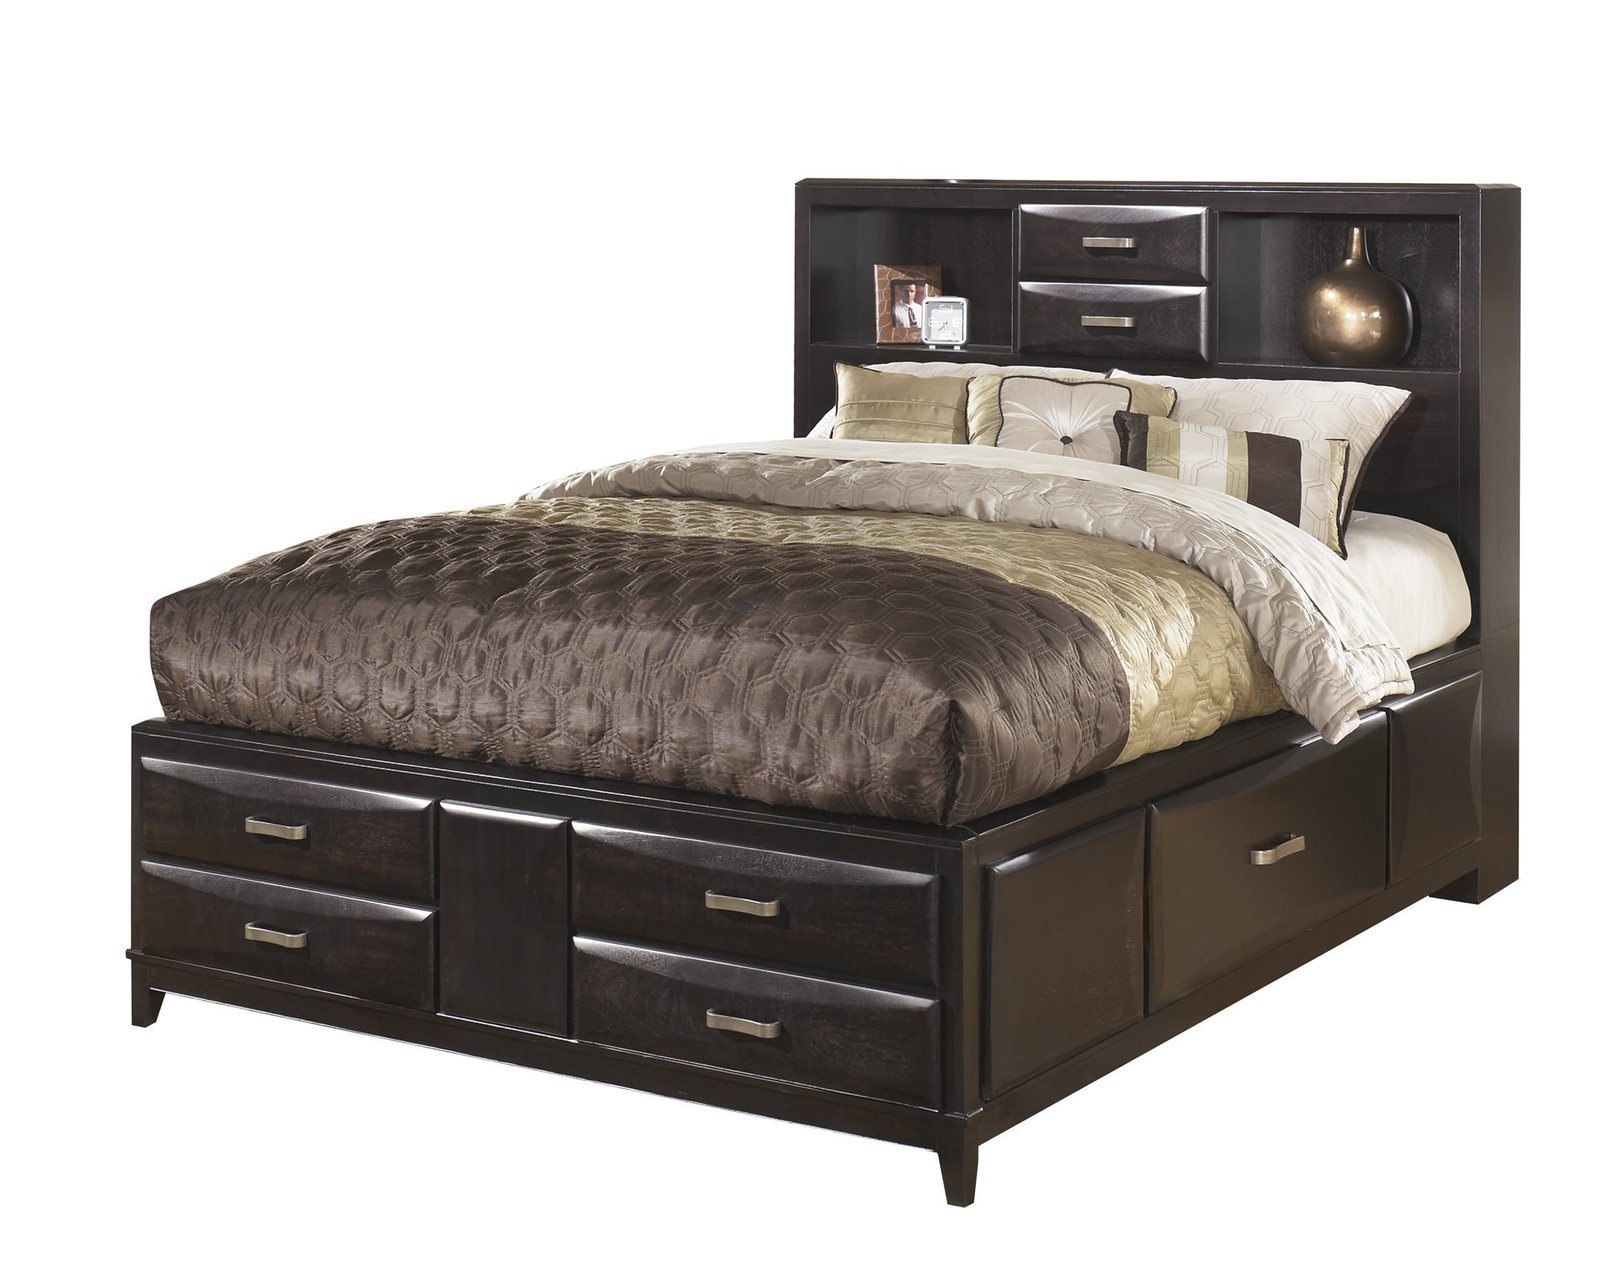 4pc bedroom furniture set